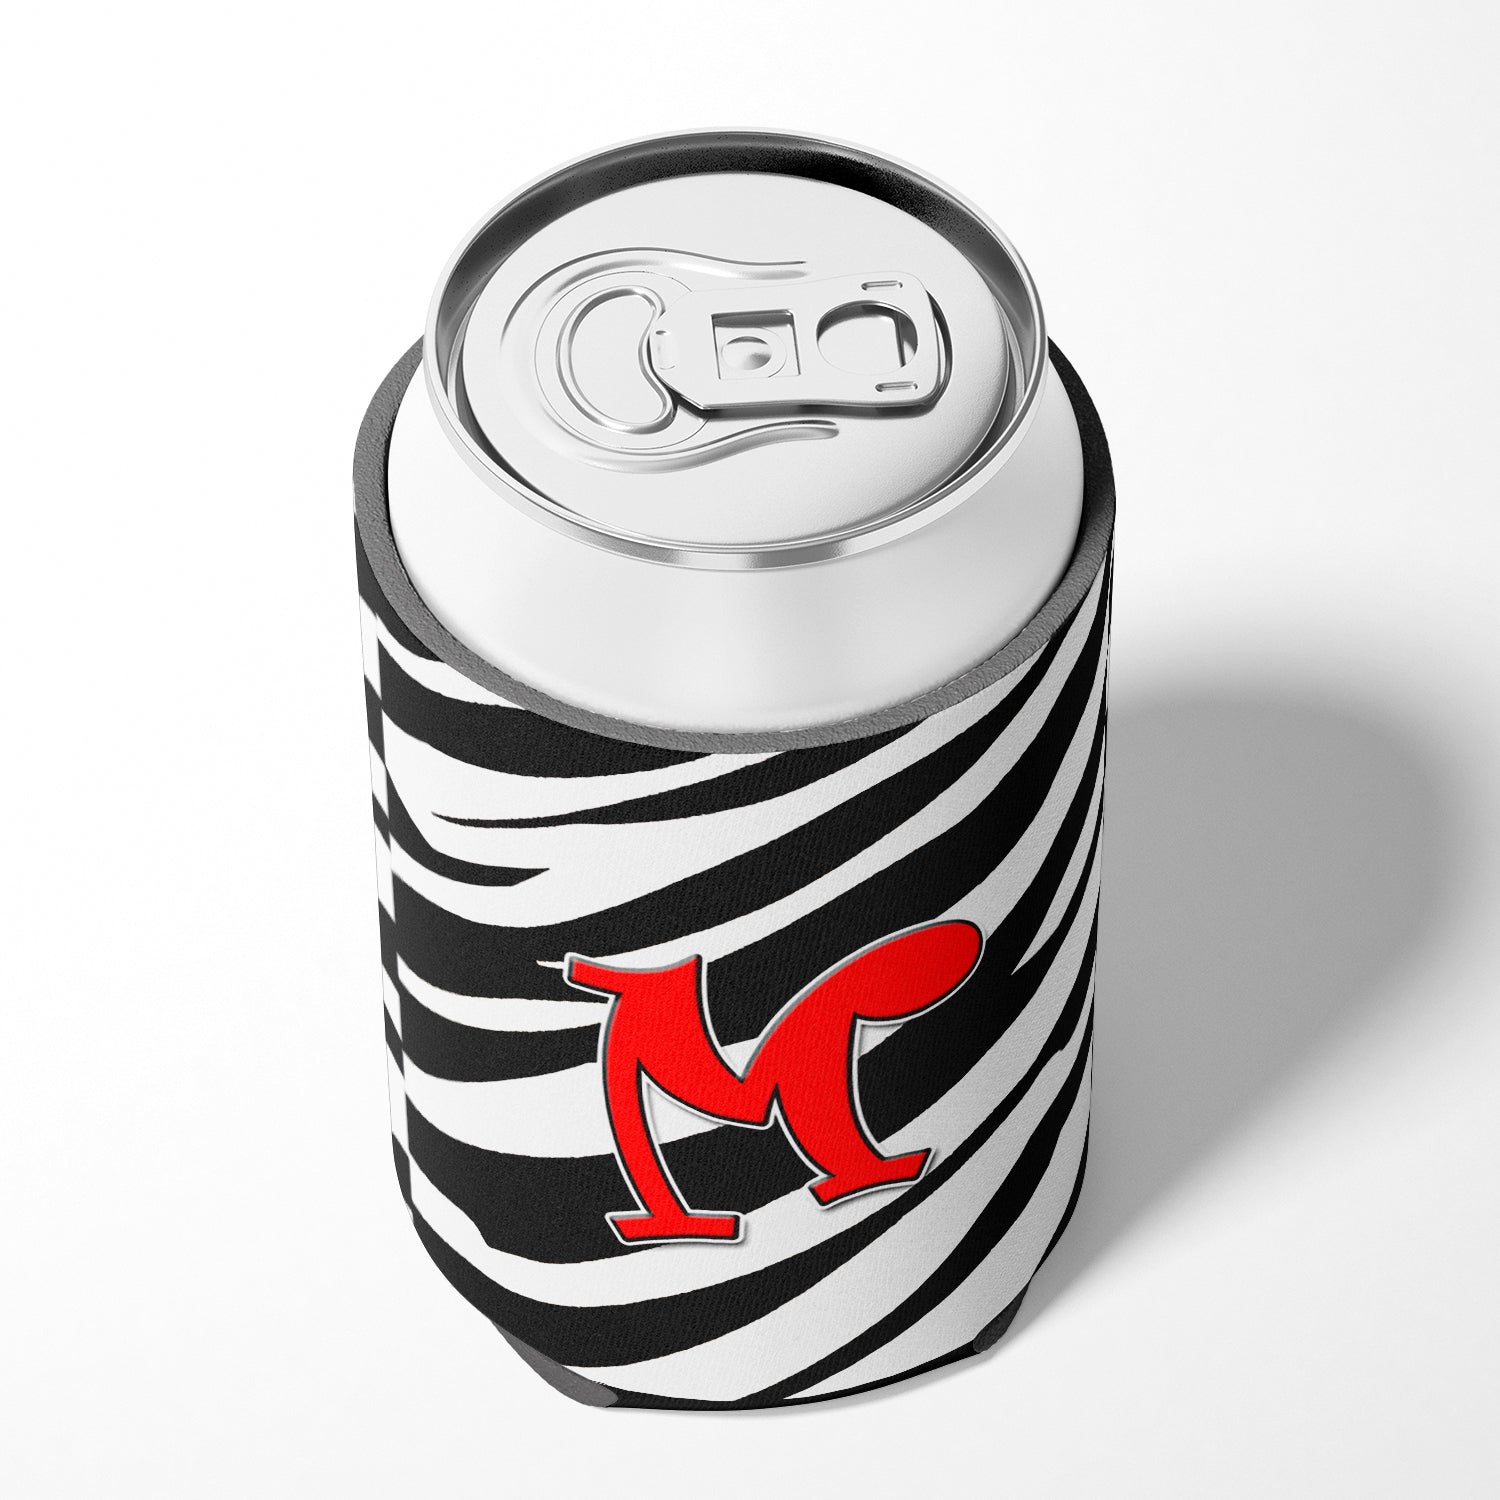 Letter M Initial Monogram - Zebra Red Can or Bottle Beverage Insulator Hugger